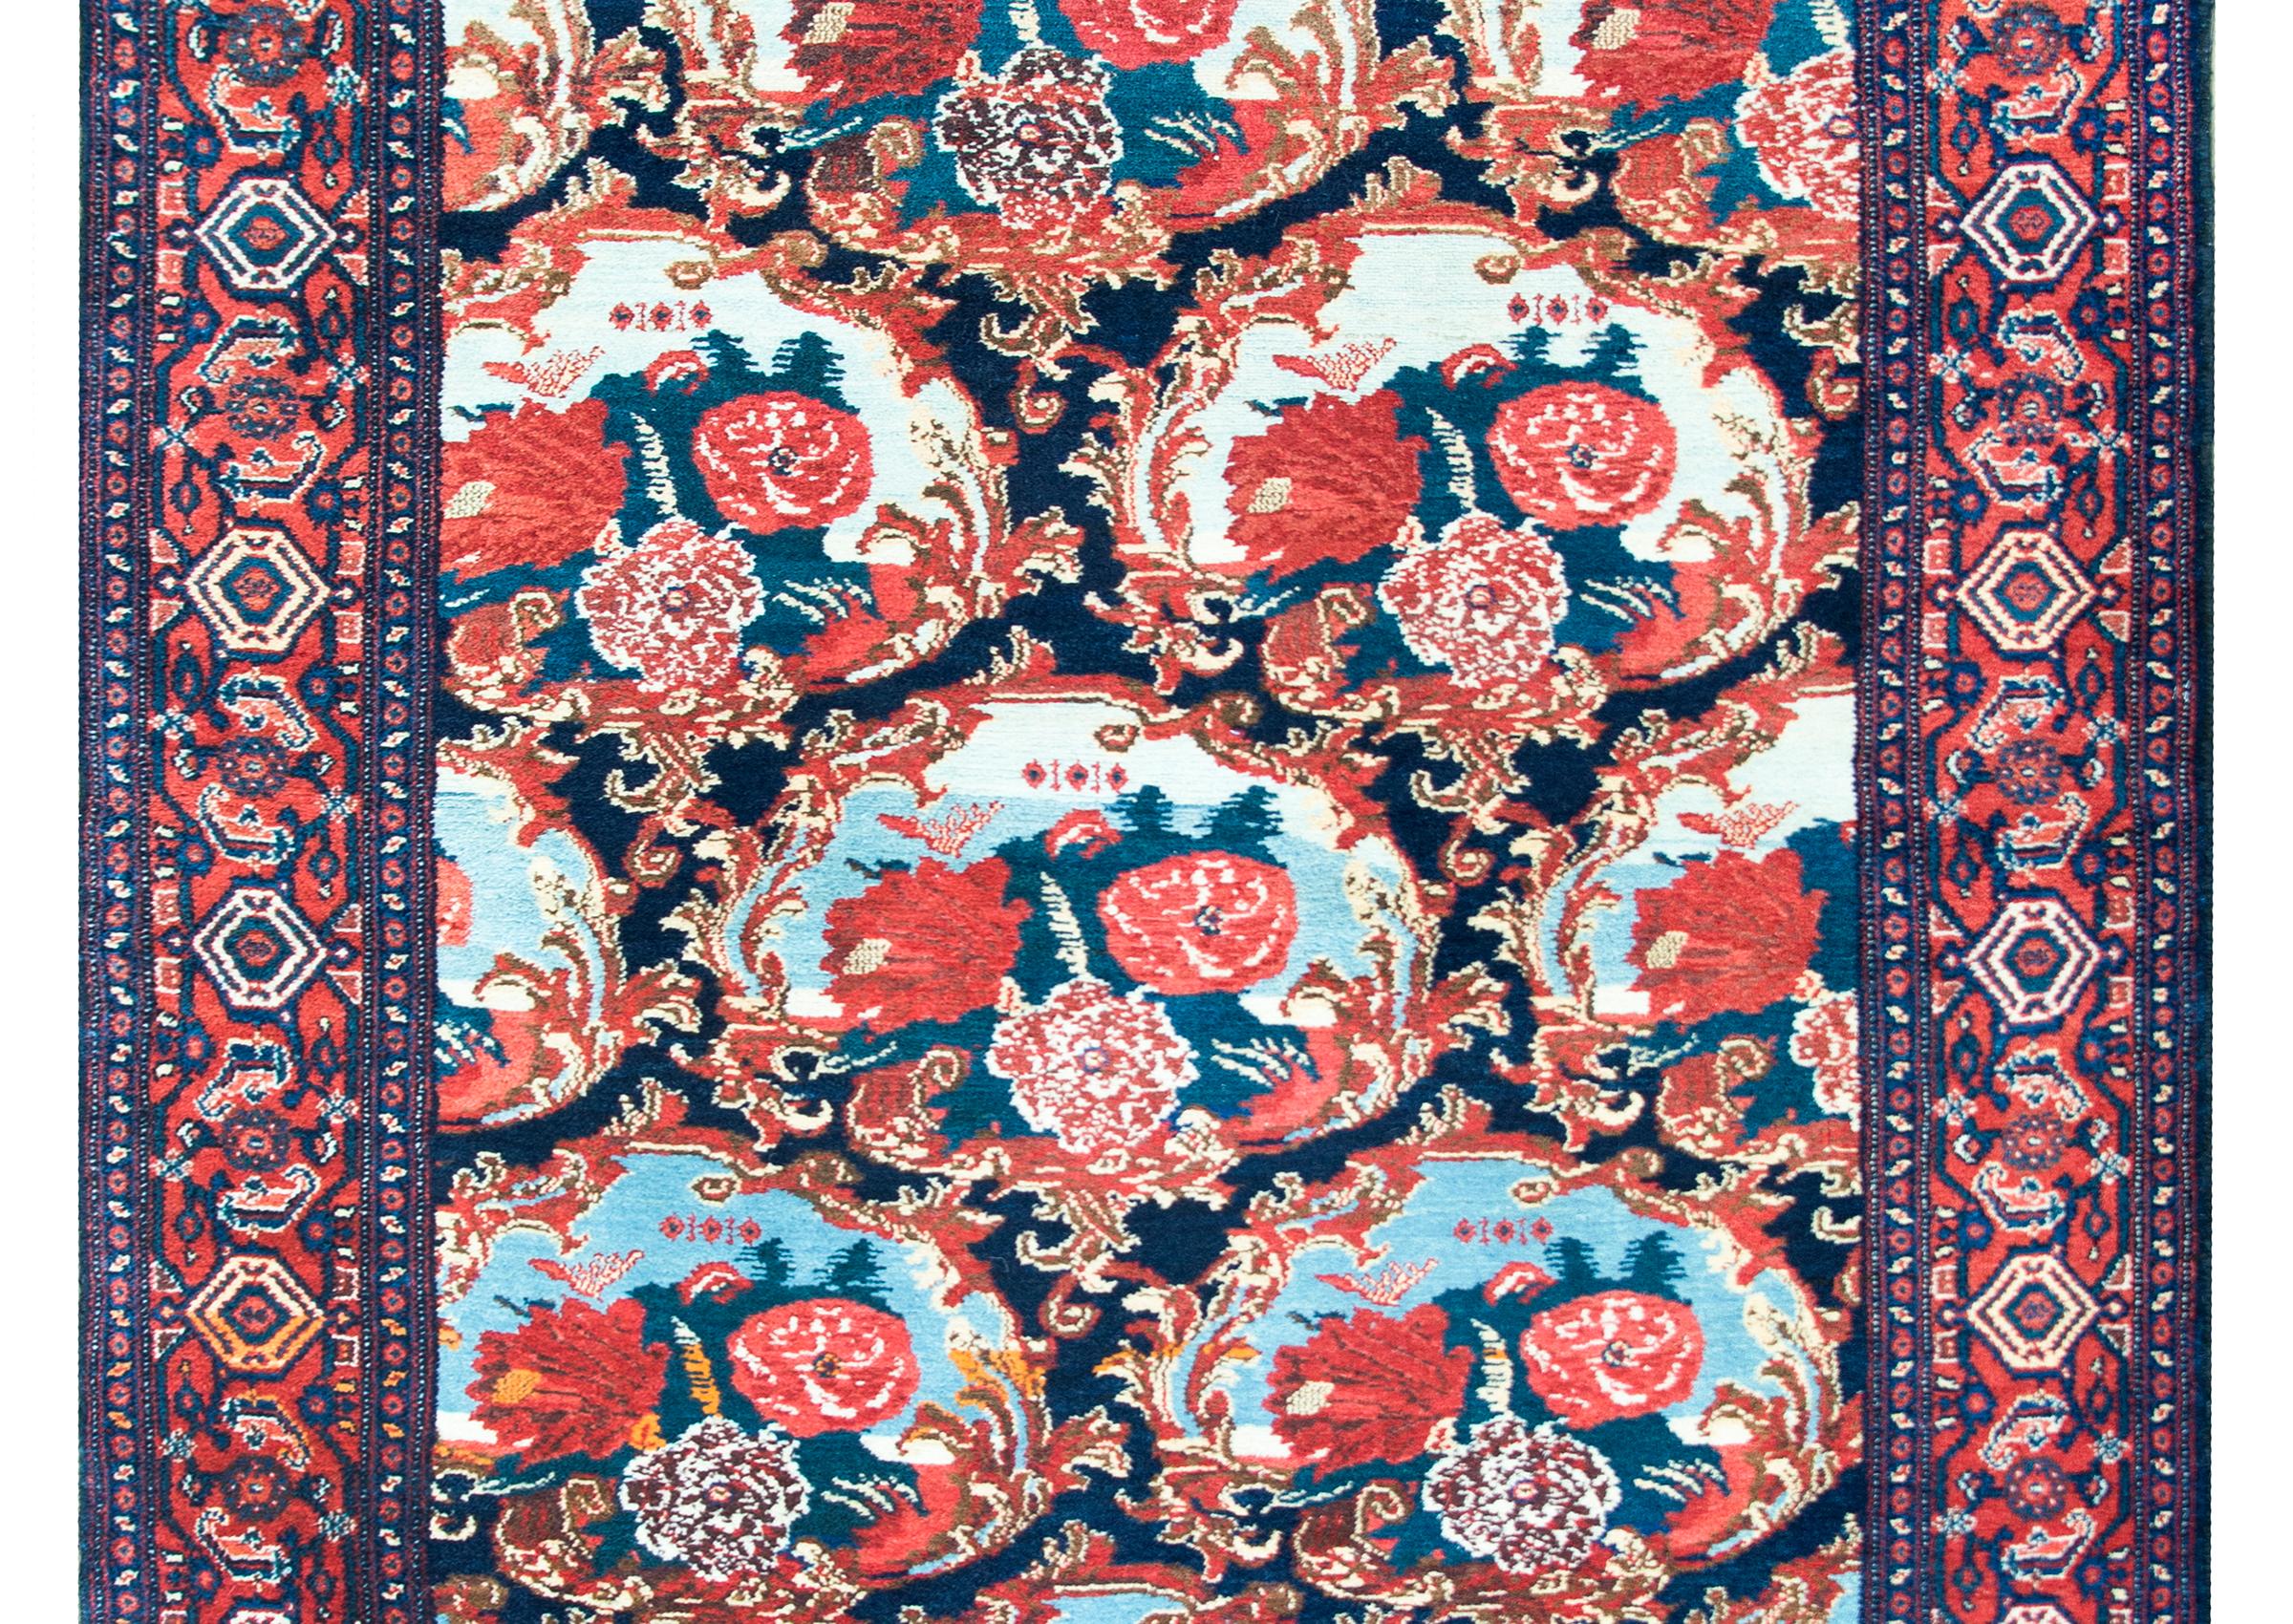 Ein unglaublicher persischer Senneh-Teppich aus dem frühen 20. Jahrhundert mit den schönsten großformatigen Blumenmedaillons, die jeweils von barocken Blumenrahmen umgeben sind und in leuchtendem Karmesinrot, Rosa, Weiß, hellem und dunklem Indigo